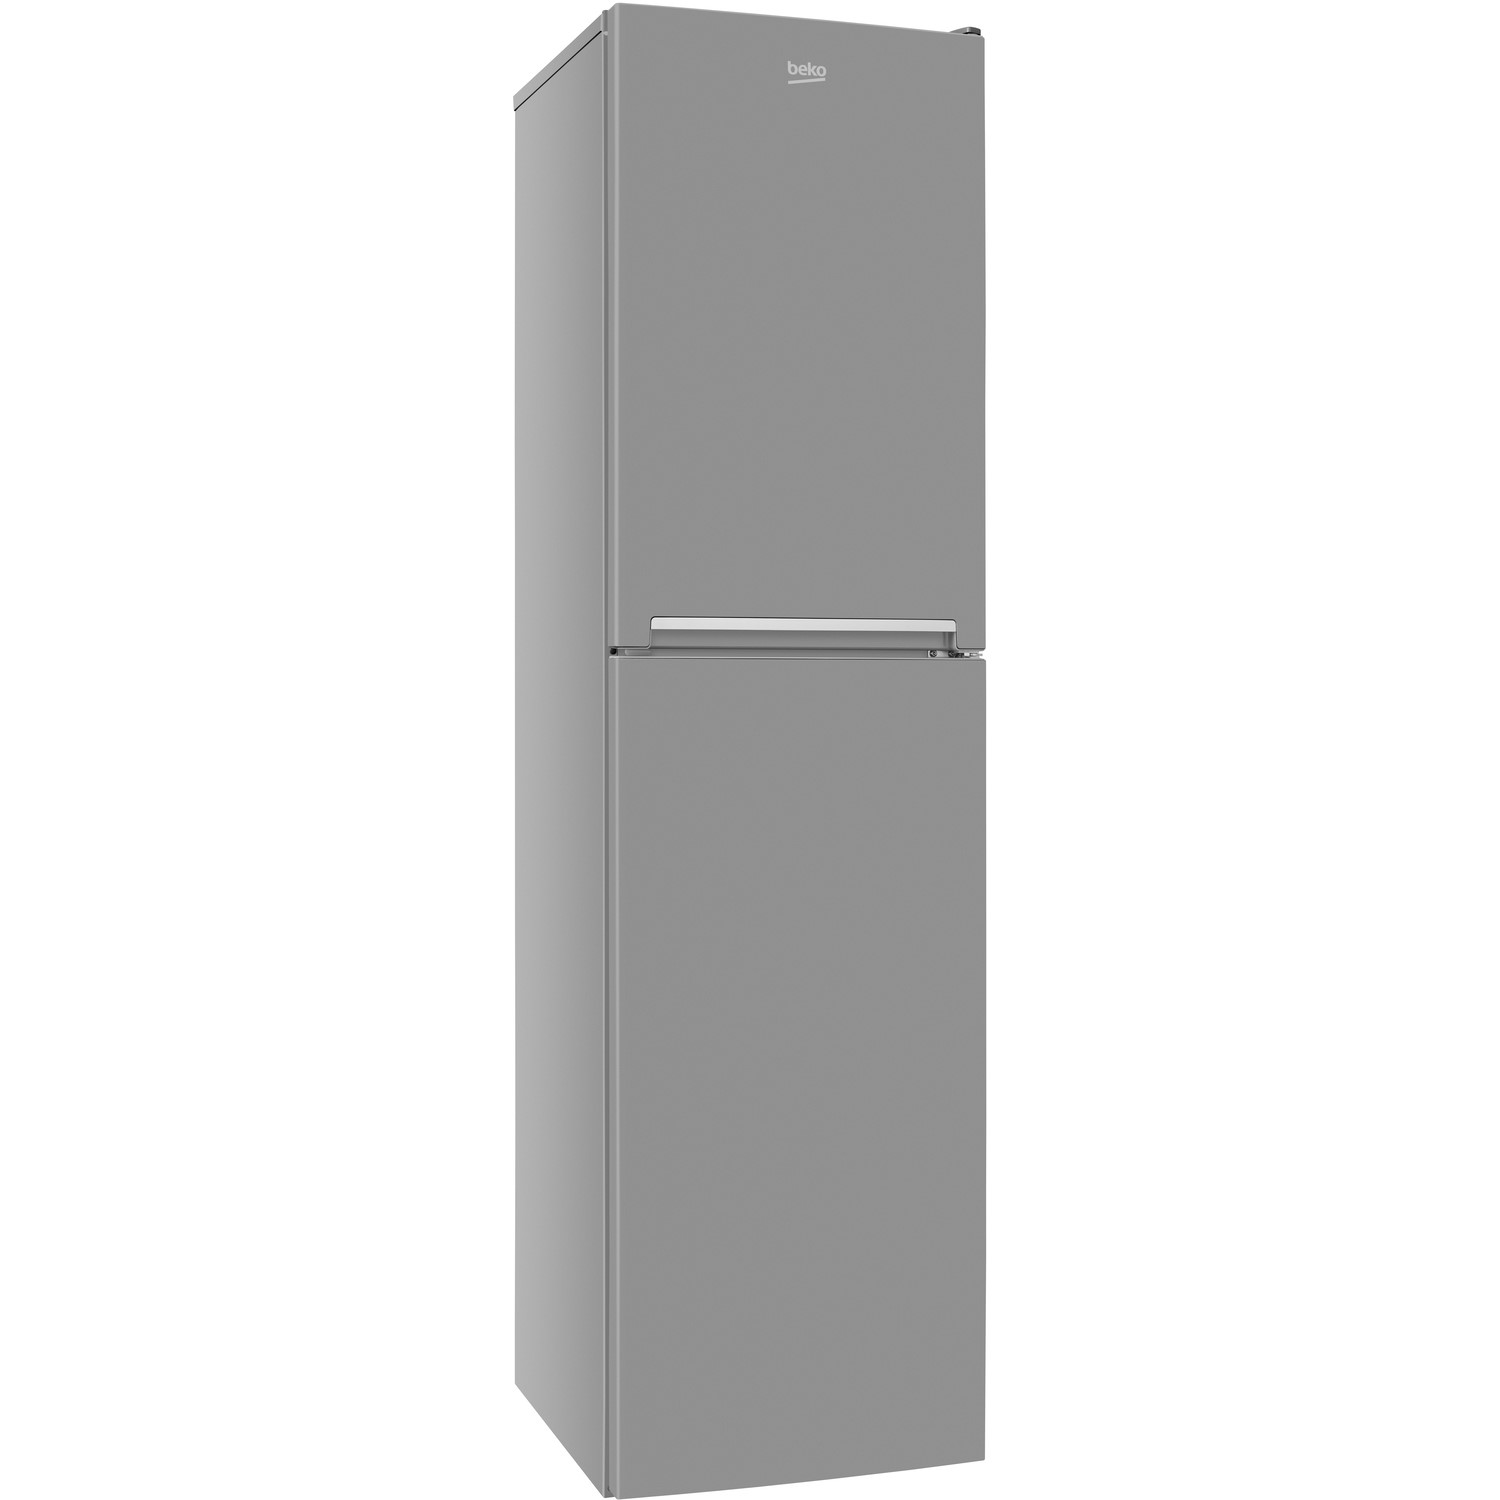 Узкие холодильники до 55 см. Beko холодильник 40 см ширина. Узкий холодильник 40 см. Beko ml1501_07 купить. Купить узкий холодильник производства БЕКО.